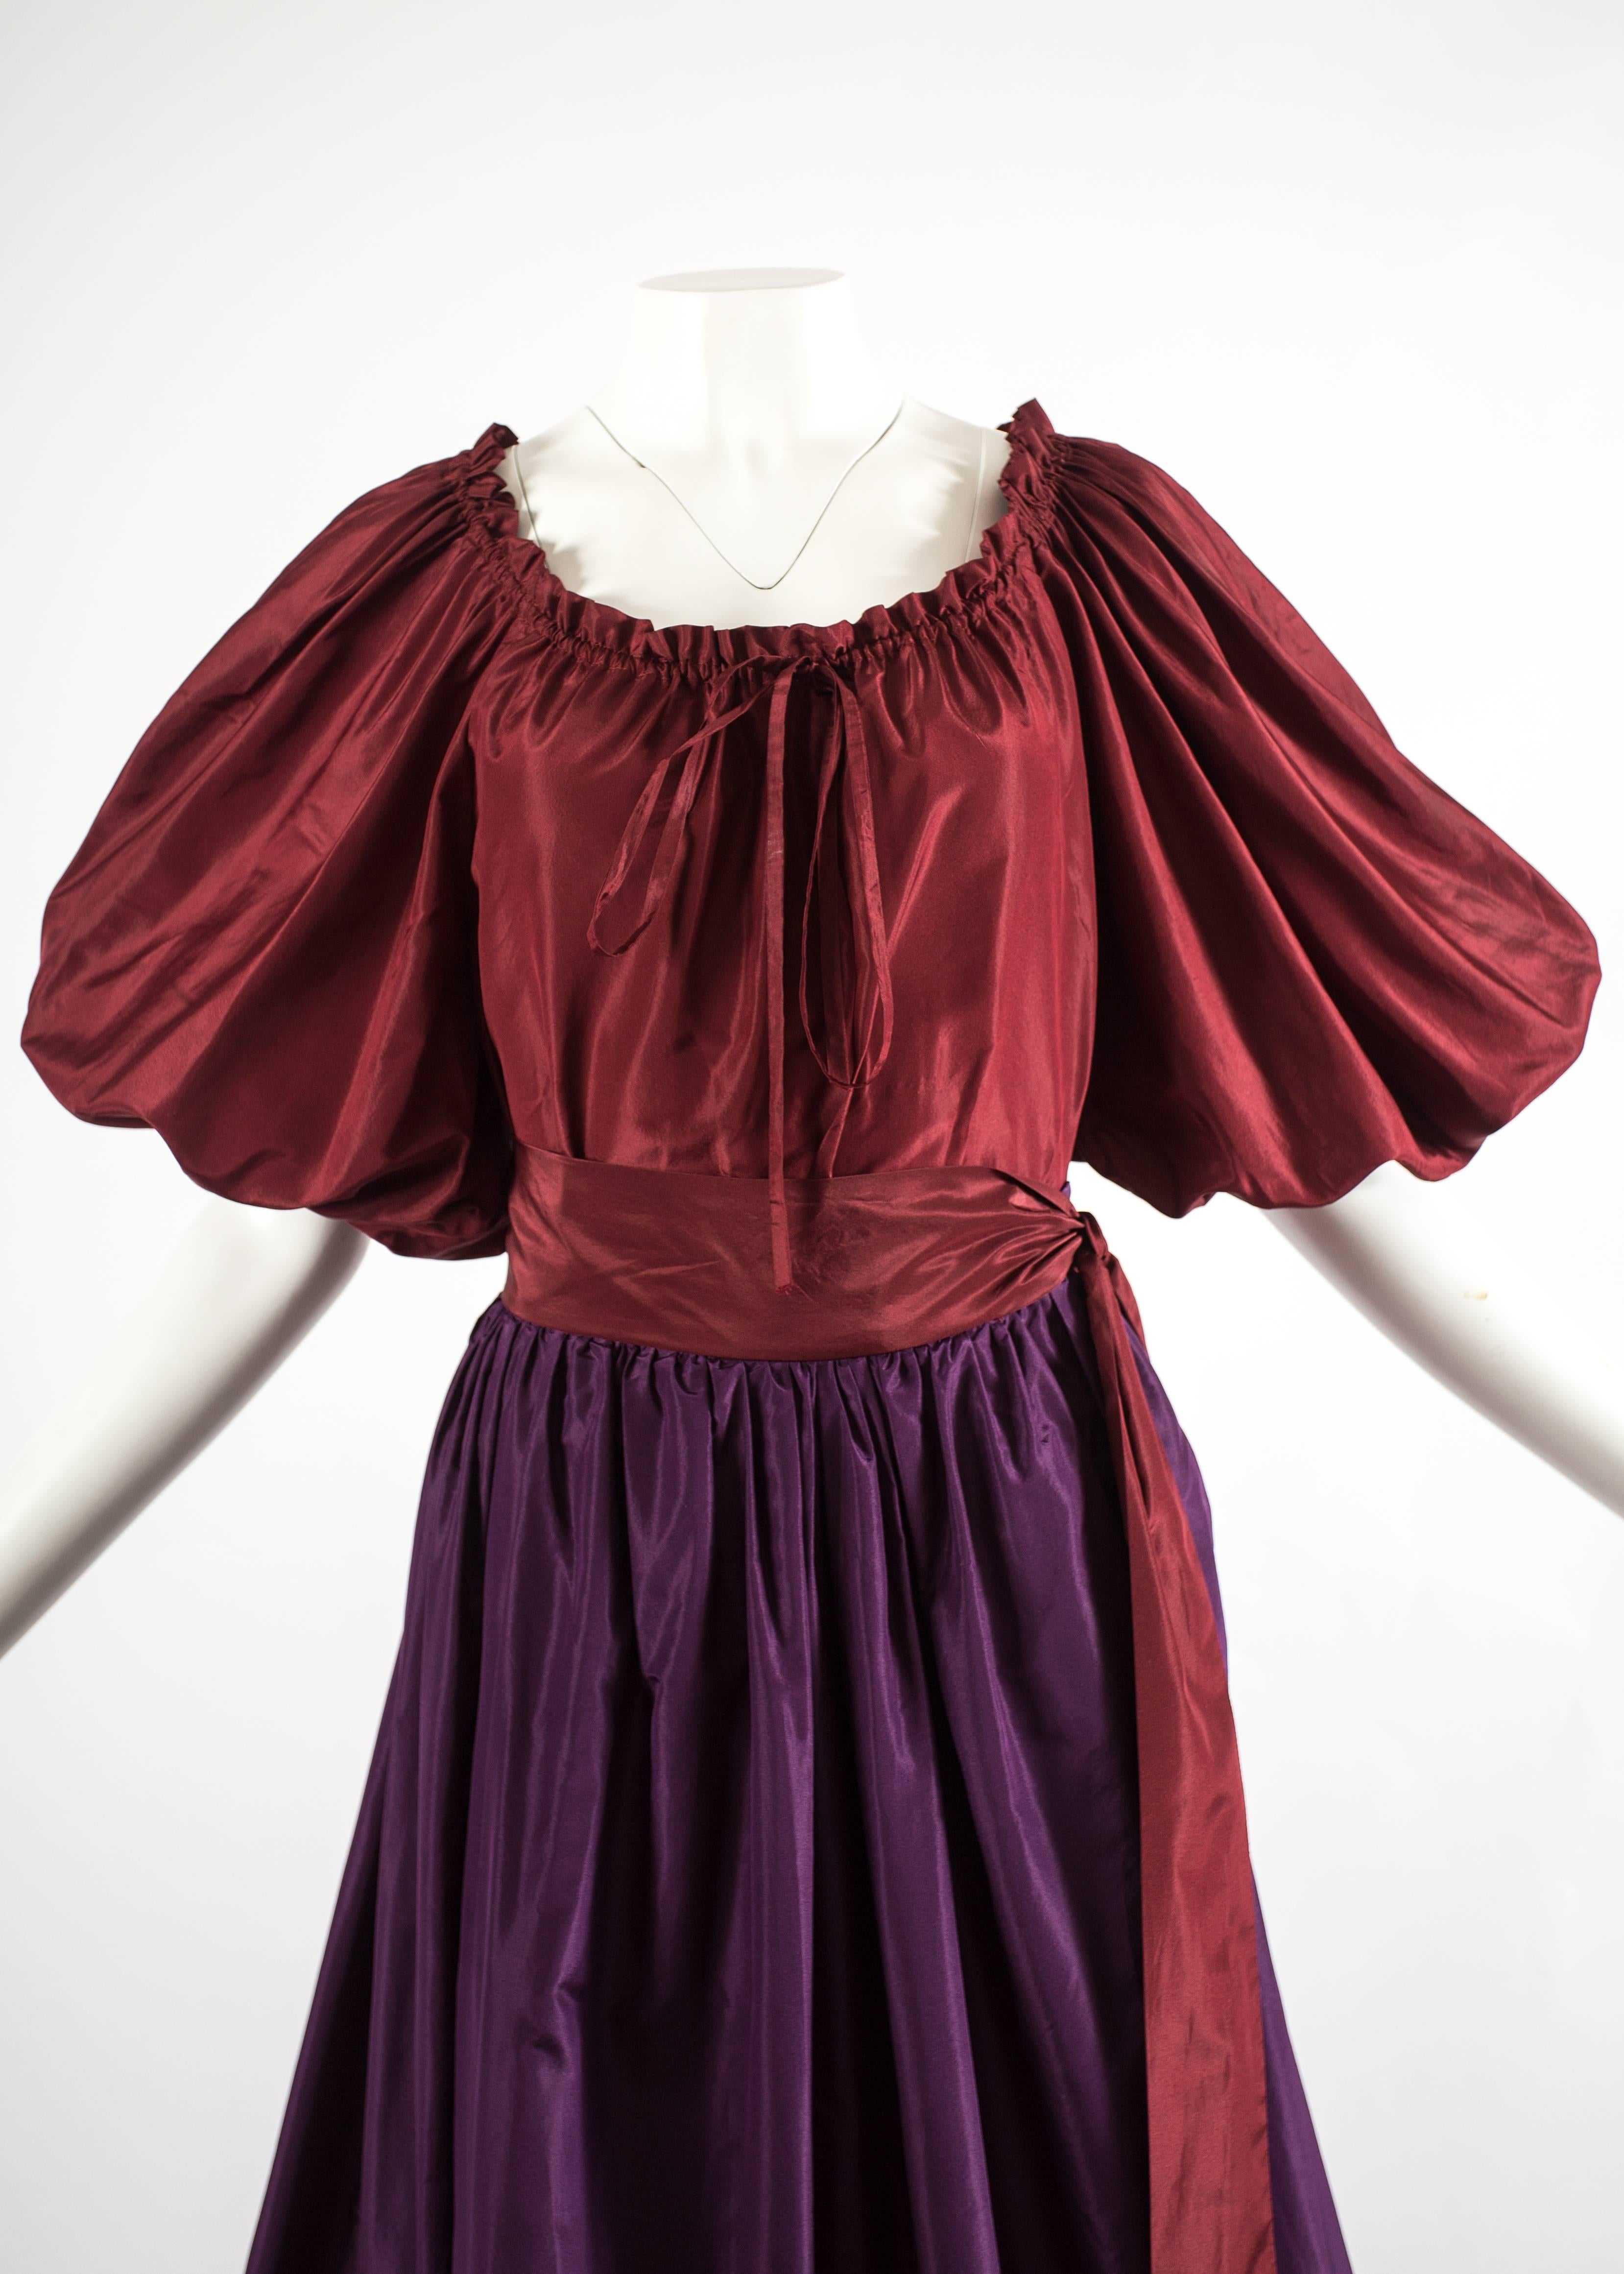 Black Yves Saint Laurent 1978 silk taffeta blouse and skirt ensemble 